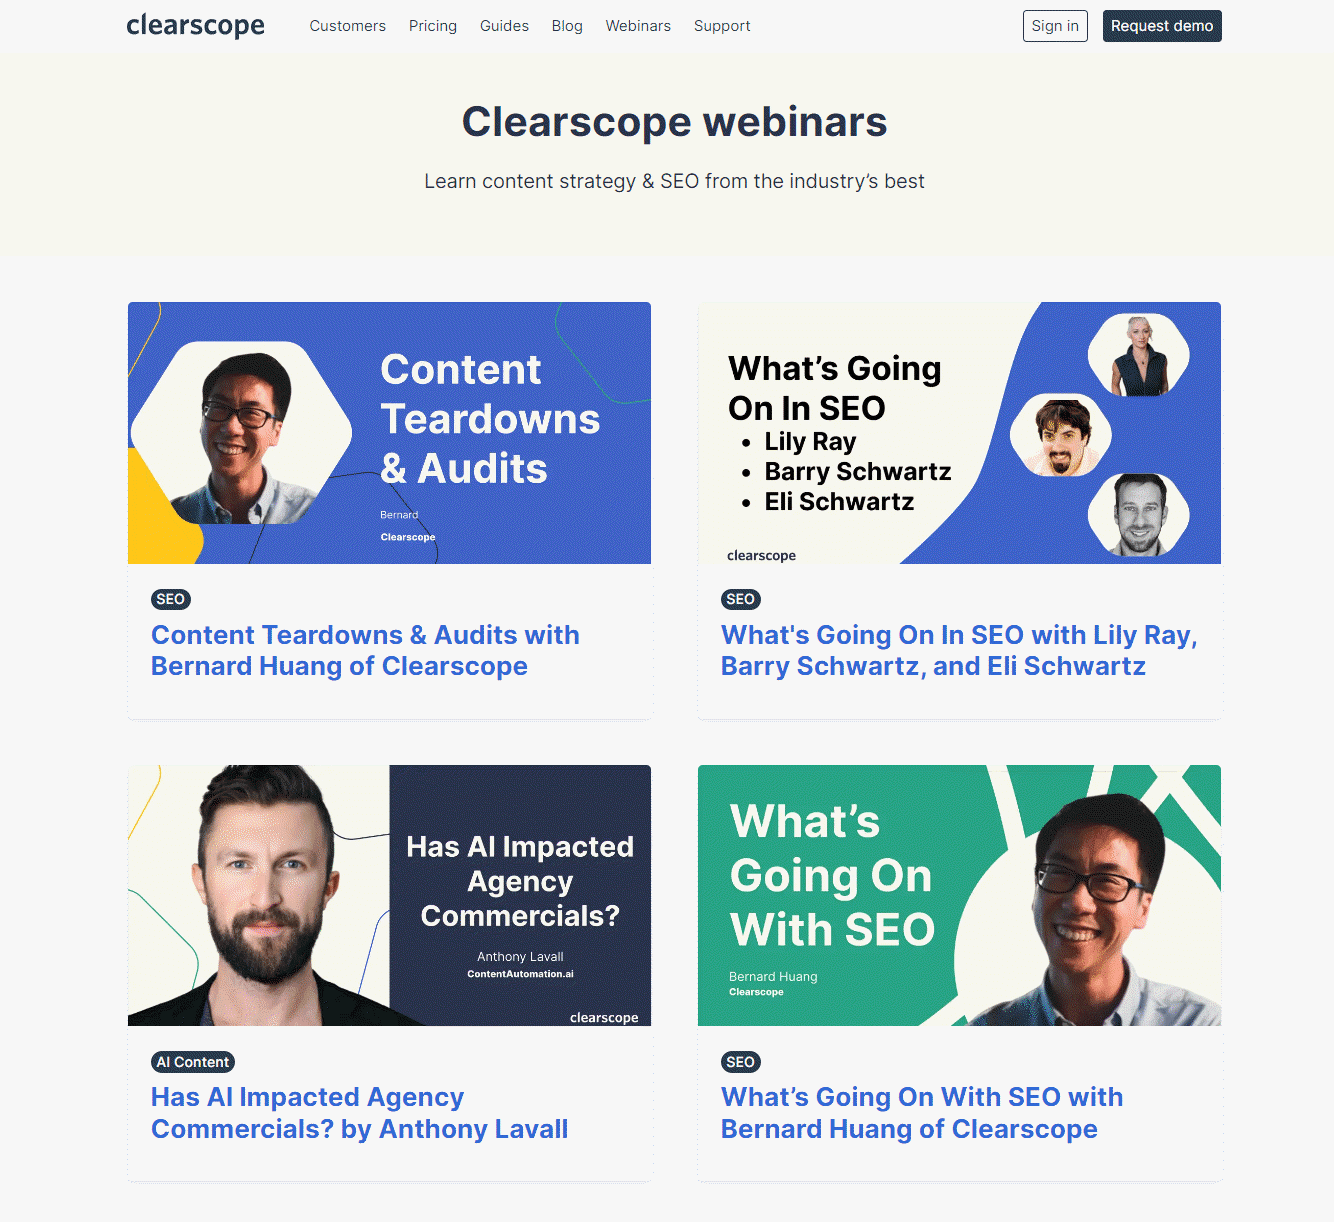 clearscope webinars